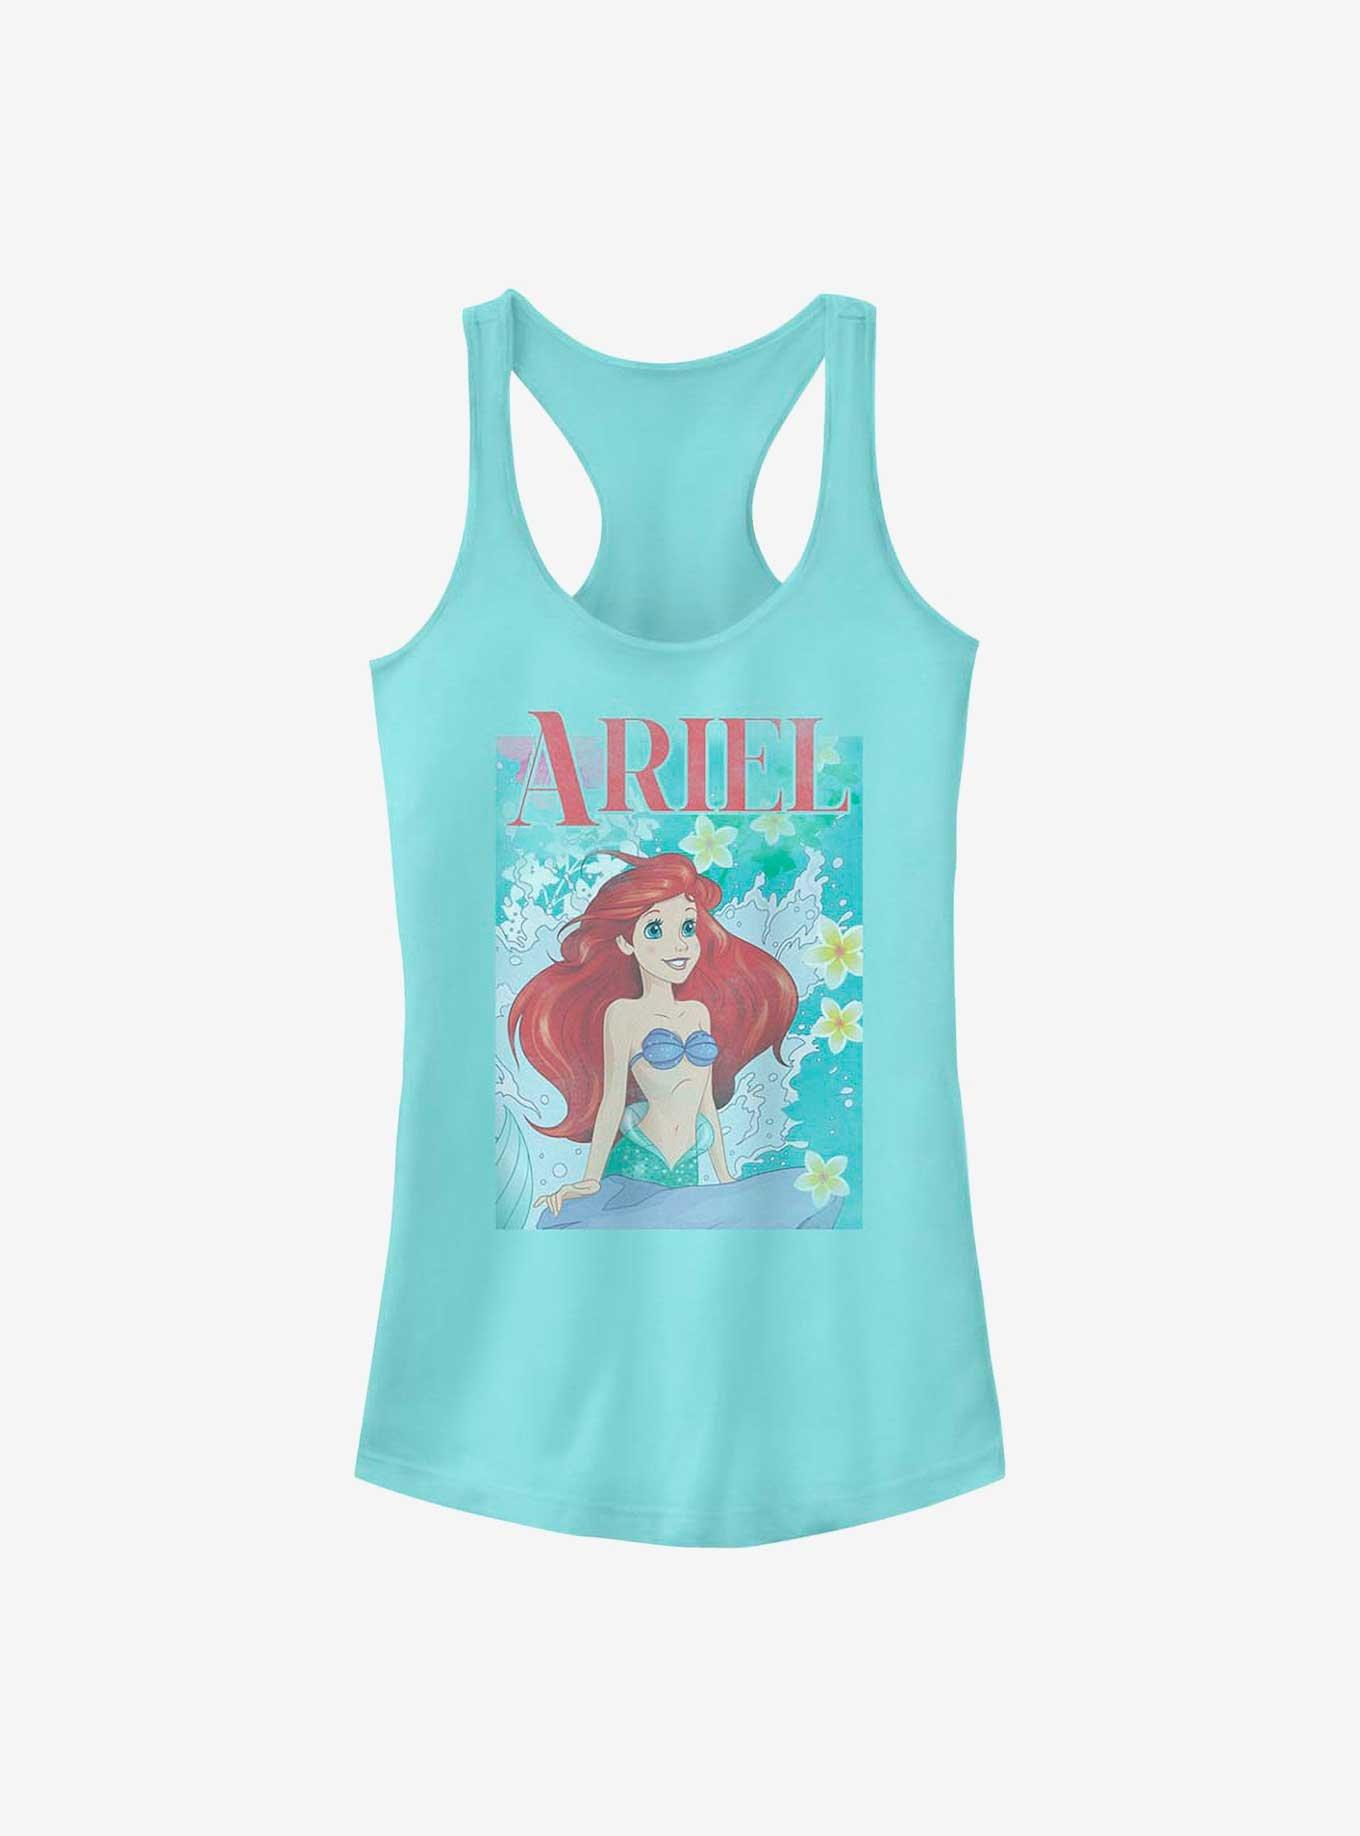 Disney The Little Mermaid Ariel Crashing Waves Poster Girls Tank